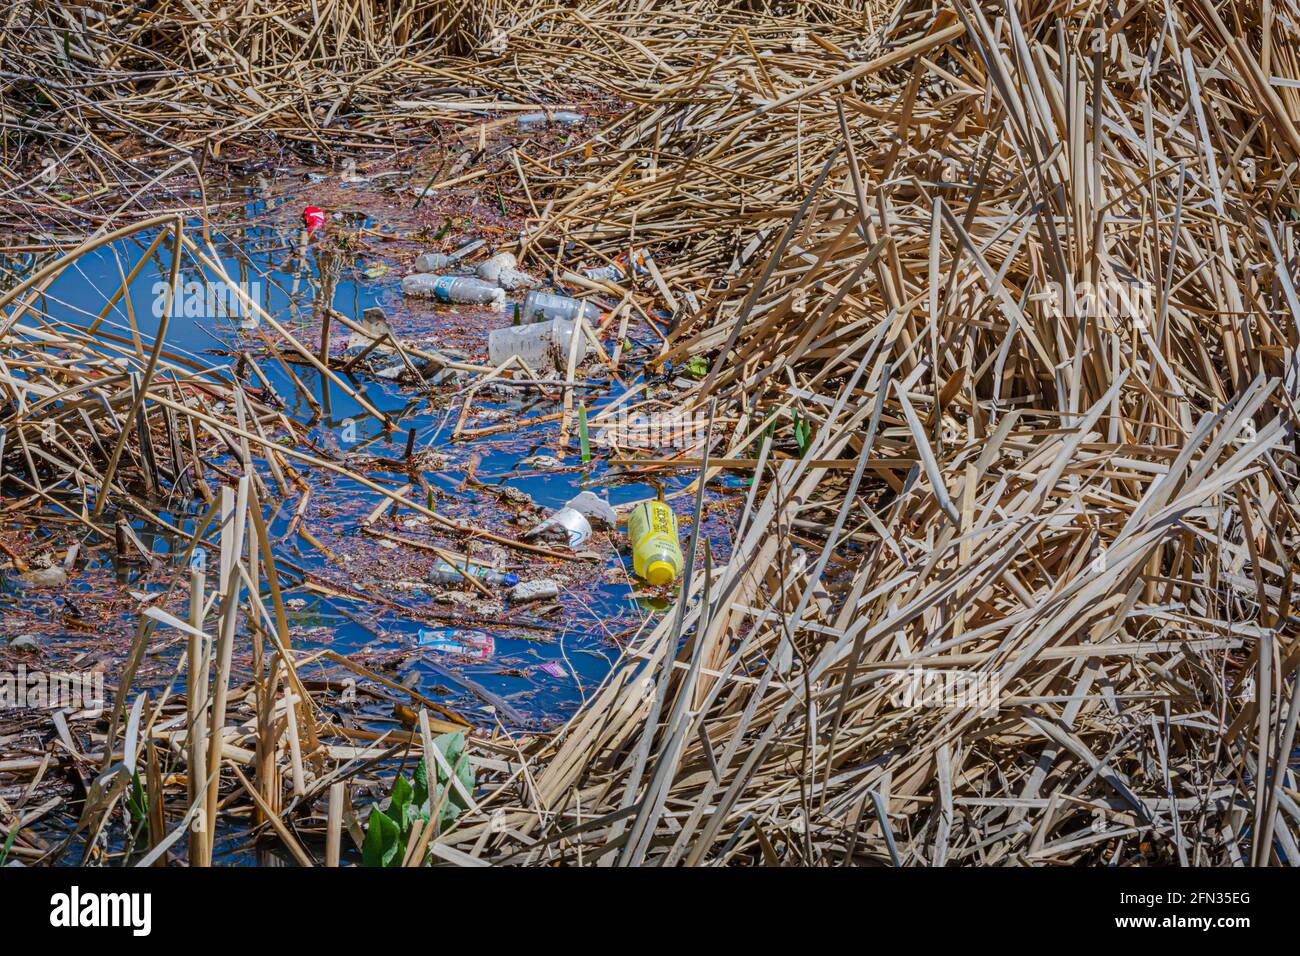 Angesammelter, übersäter Müll, der nach starkem Regen in Cattail-Feuchtgebieten, Castle Rock Colorado USA, gesammelt wurde. Foto aufgenommen im Mai. Stockfoto